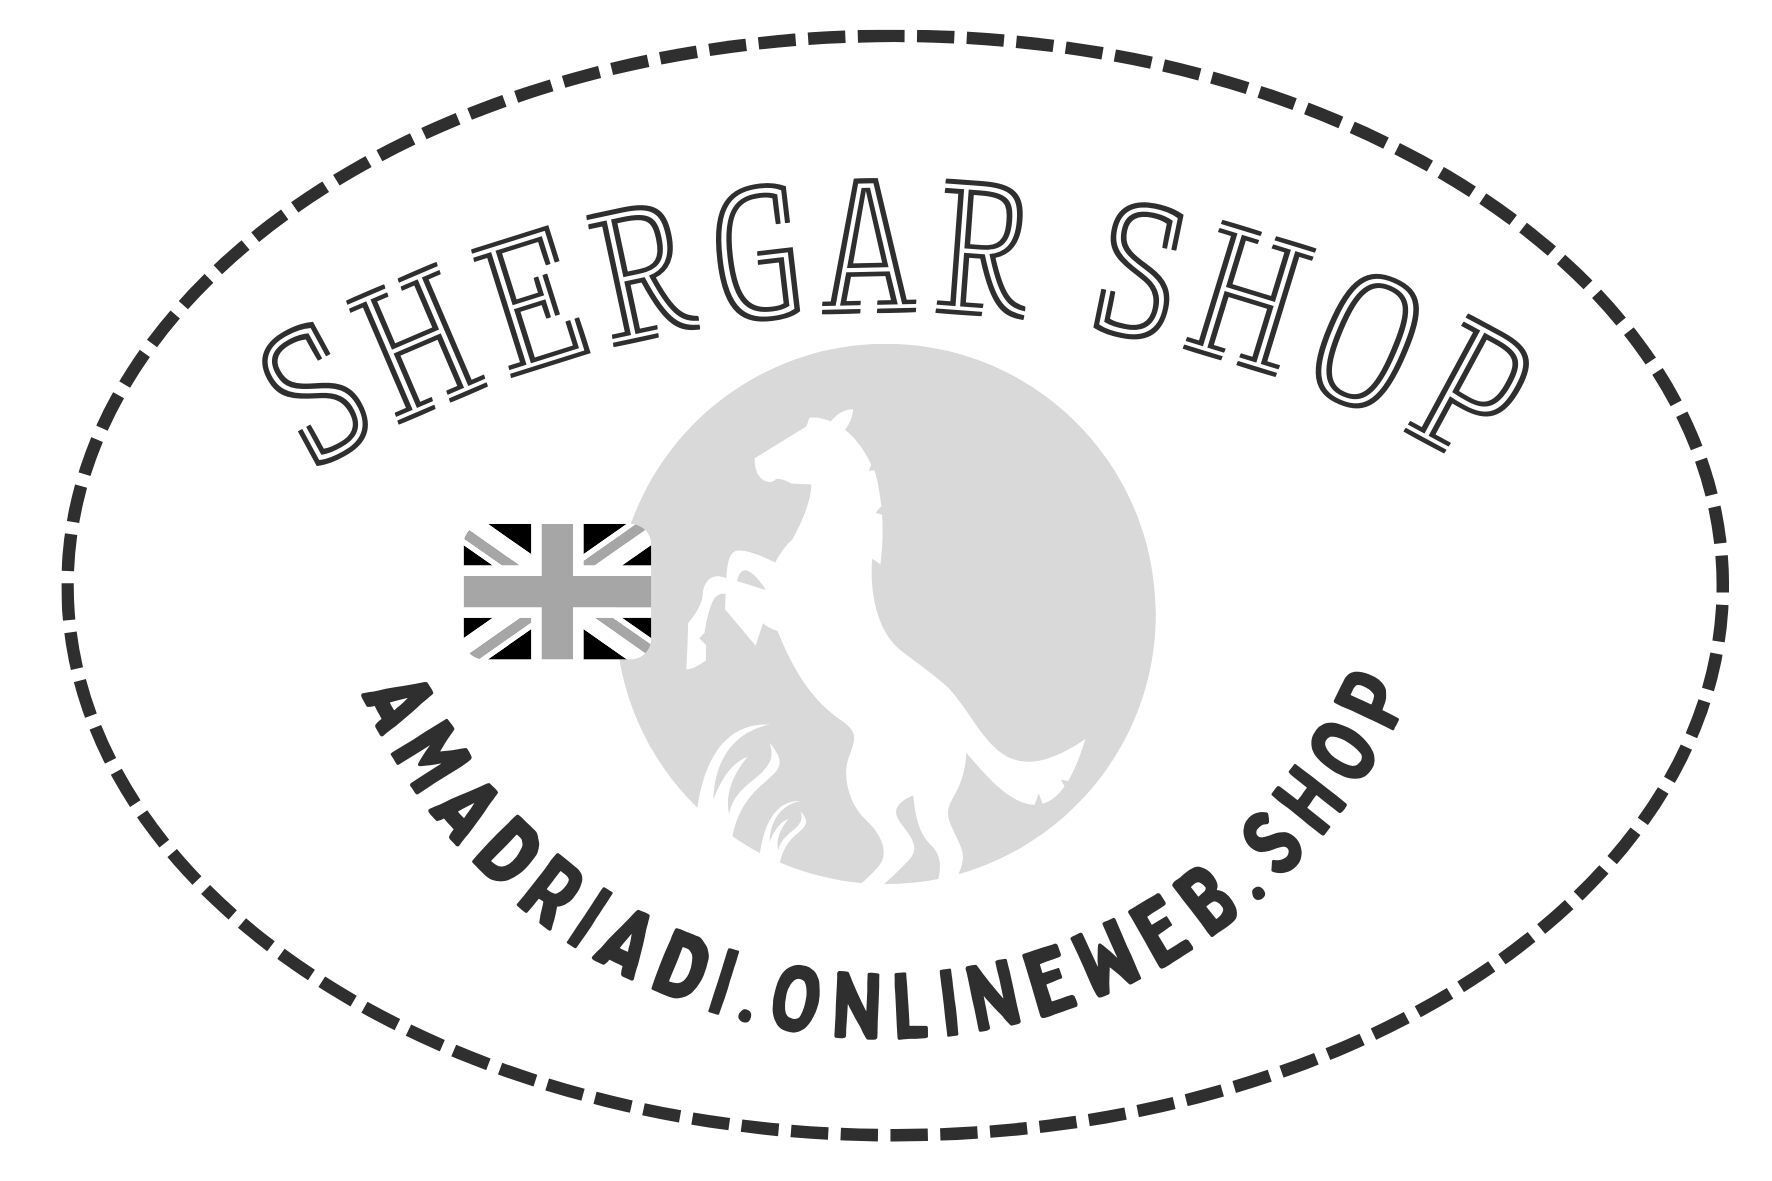 Shergar Shop